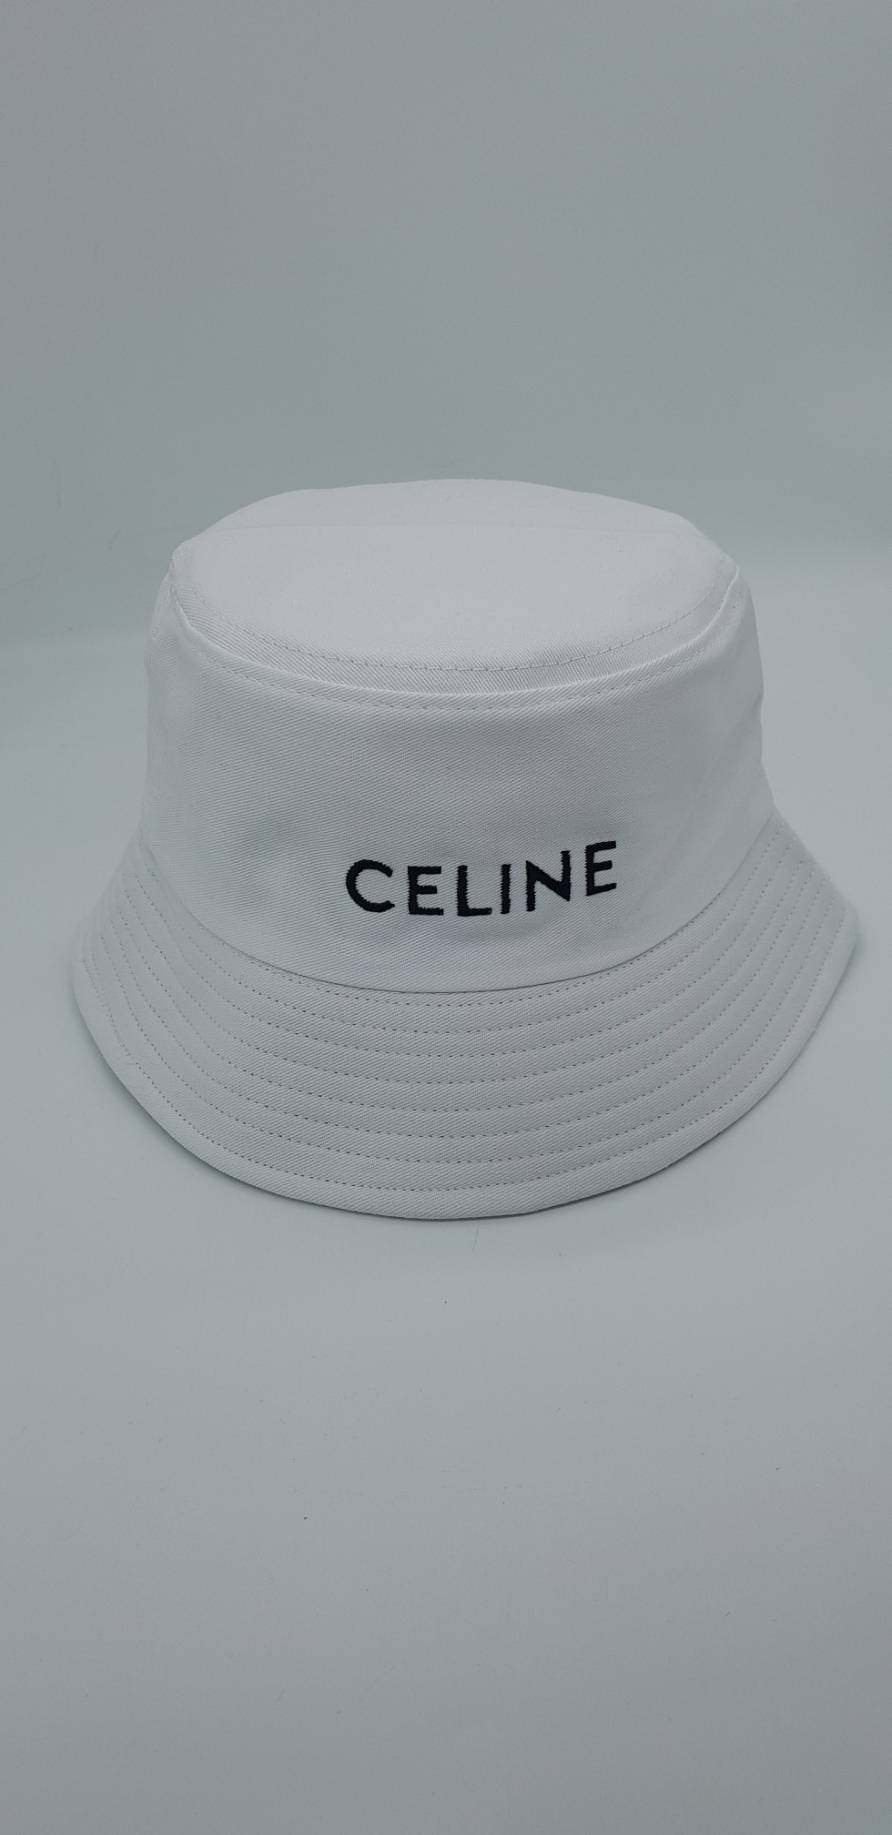 พร้อมส่ง❗❗หมวกทรงแก็บ ทรงบักเก็ต งานพรีเมี่ยม แบรนด์  CELINE หมวกซีลีน สไตล์เกาหลี หมวกทีฮอต ดาราใส่กันมากที่สุดปี 2020